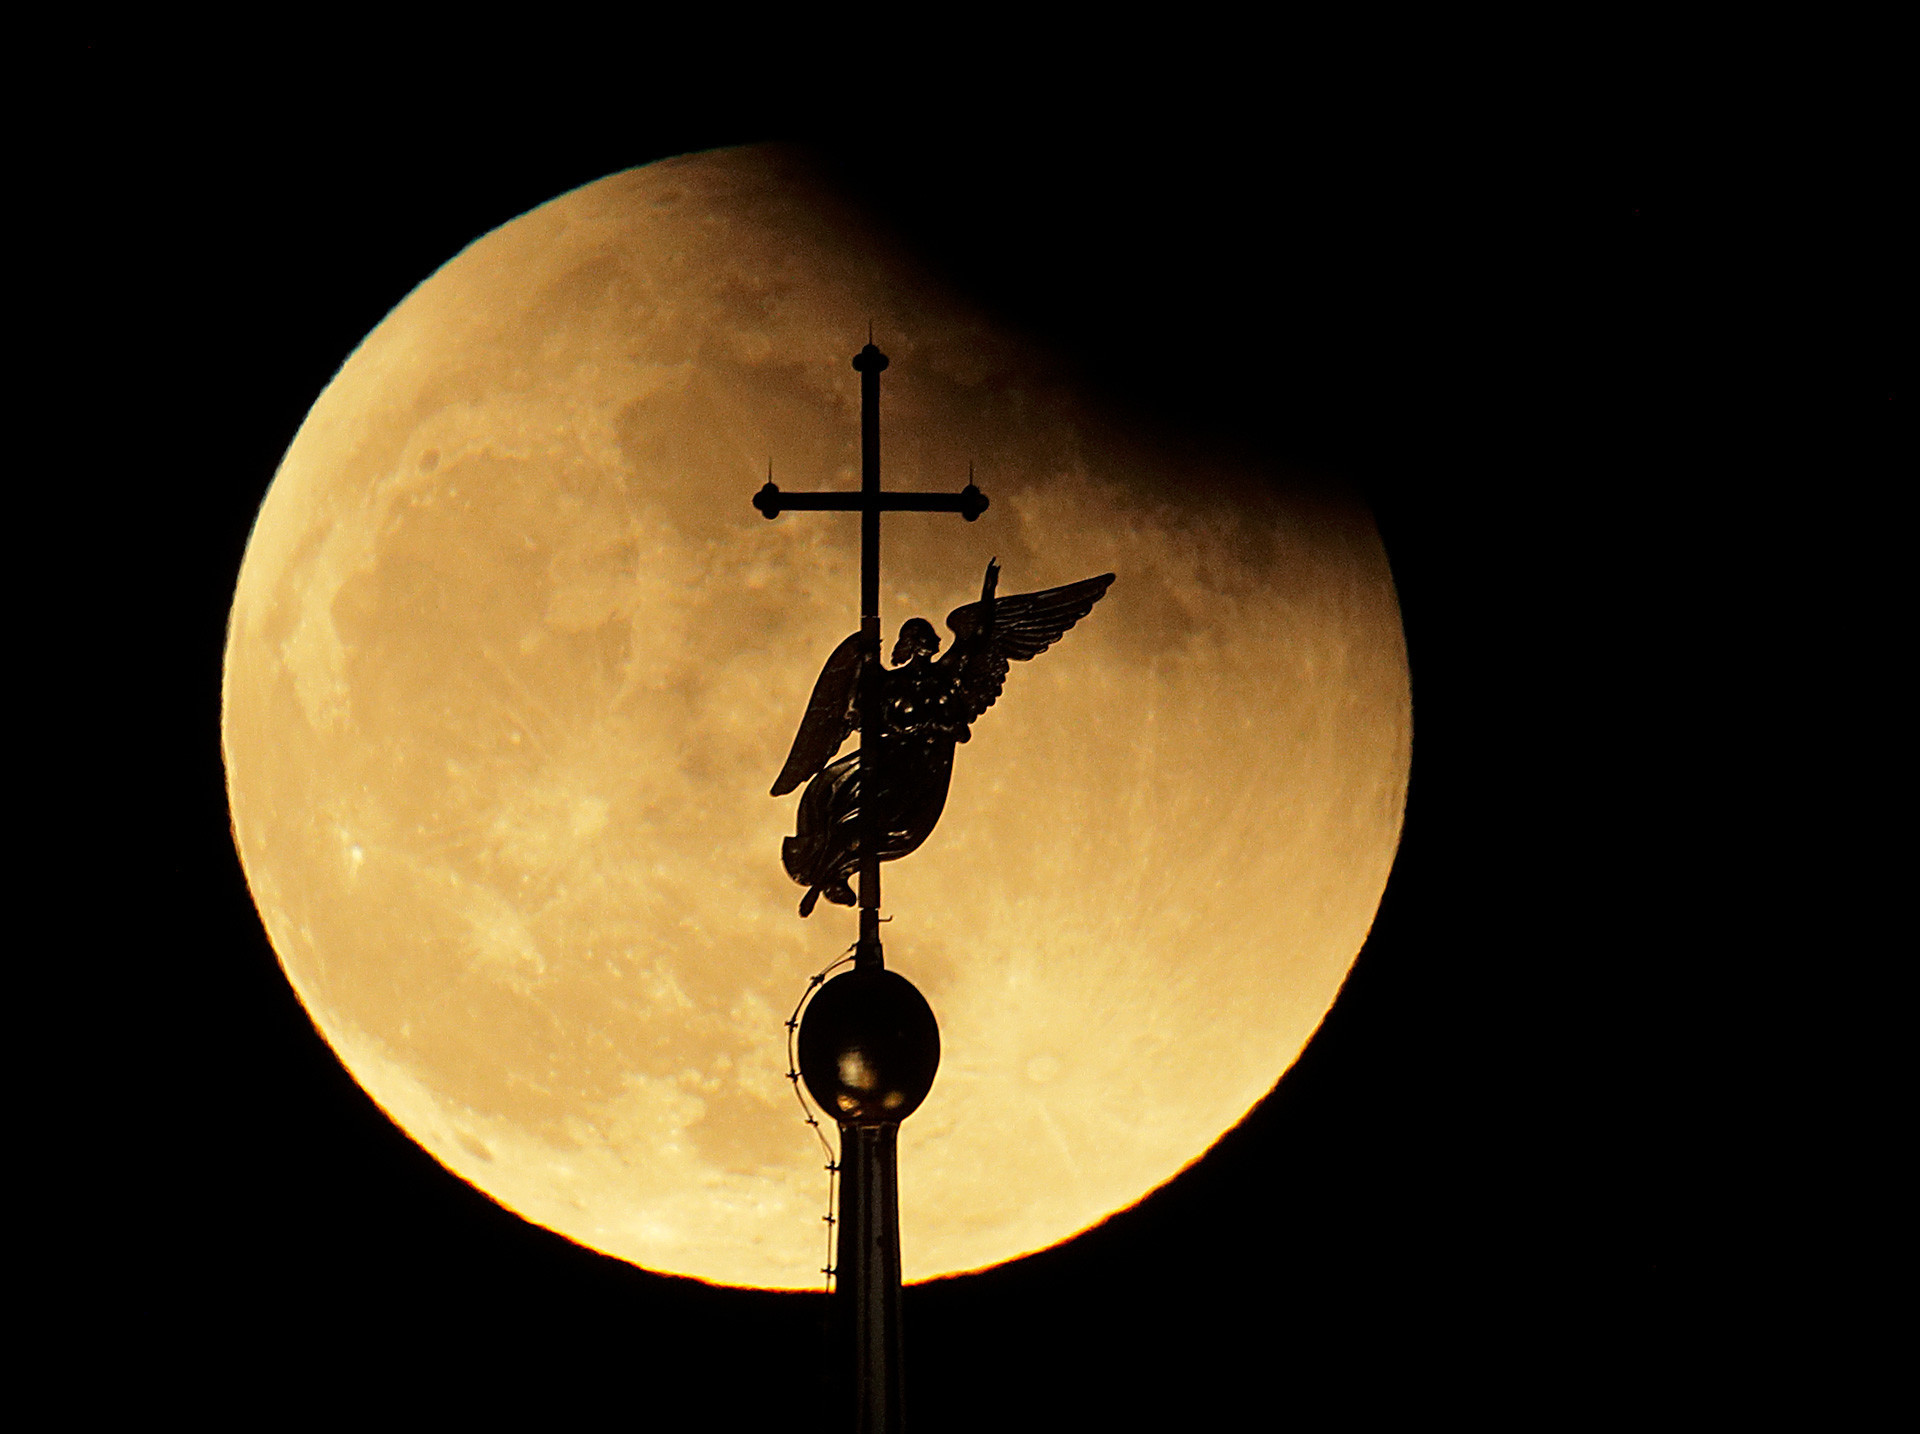 Cette girouette en forme d’ange, véritable curiosité de Saint-Pétersbourg, culmine au sommet de la Cathédrale Pierre-et-Paul, et n’en est que sublimée par la Lune.